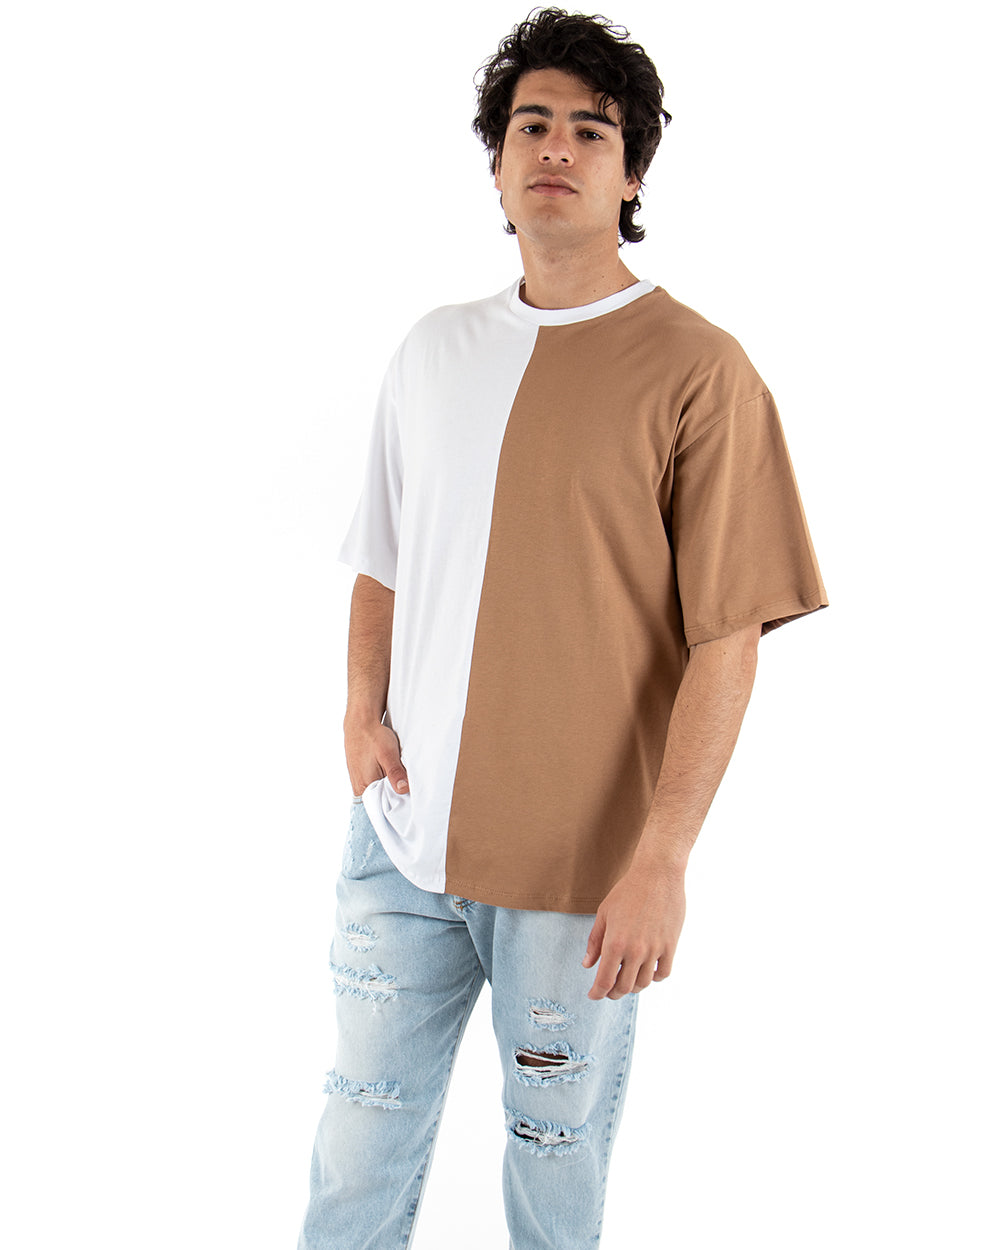 T-shirt Uomo Maniche Corte Bicolore Nera Camel Girocollo Oversize Casual GIOSAL